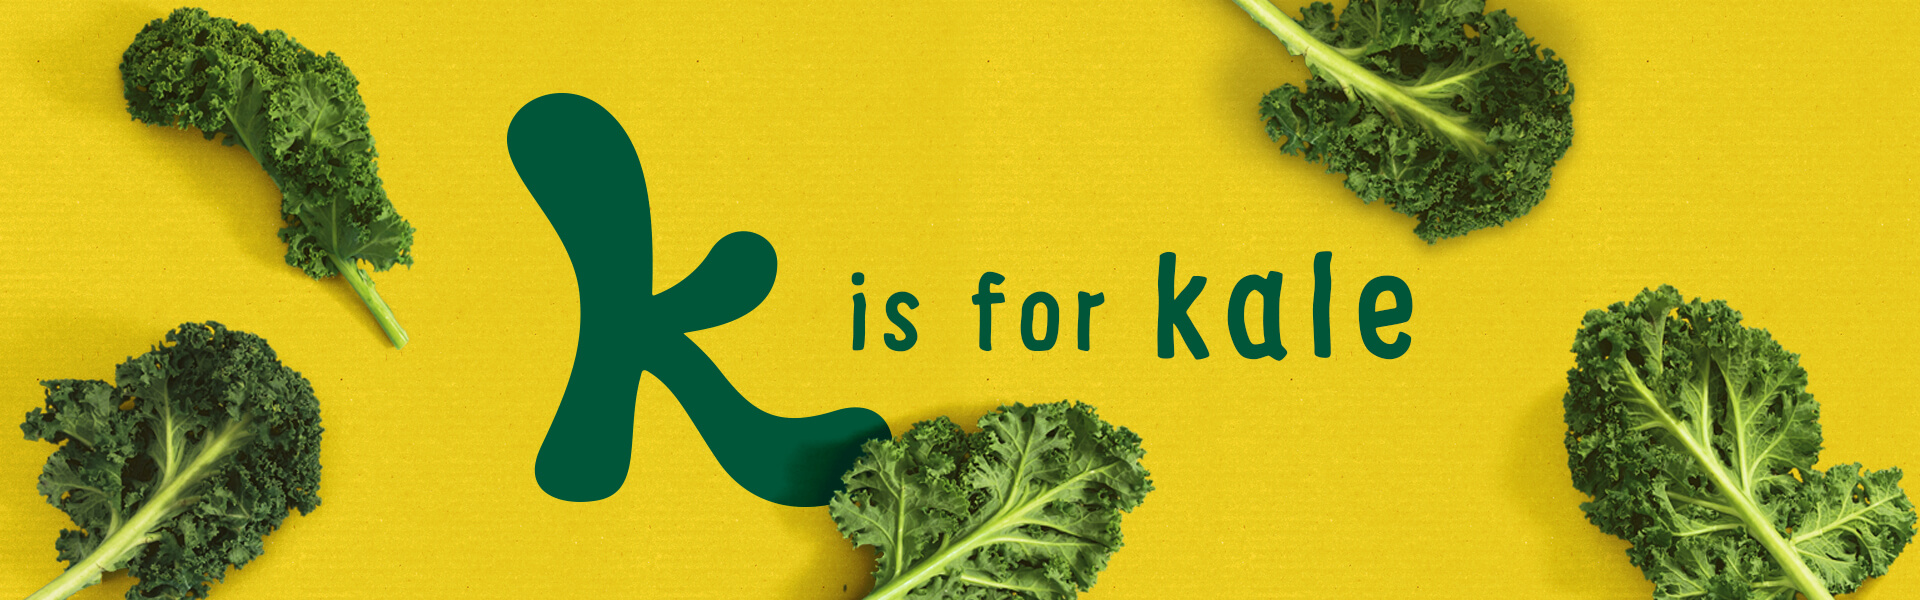 Organix k is for kale